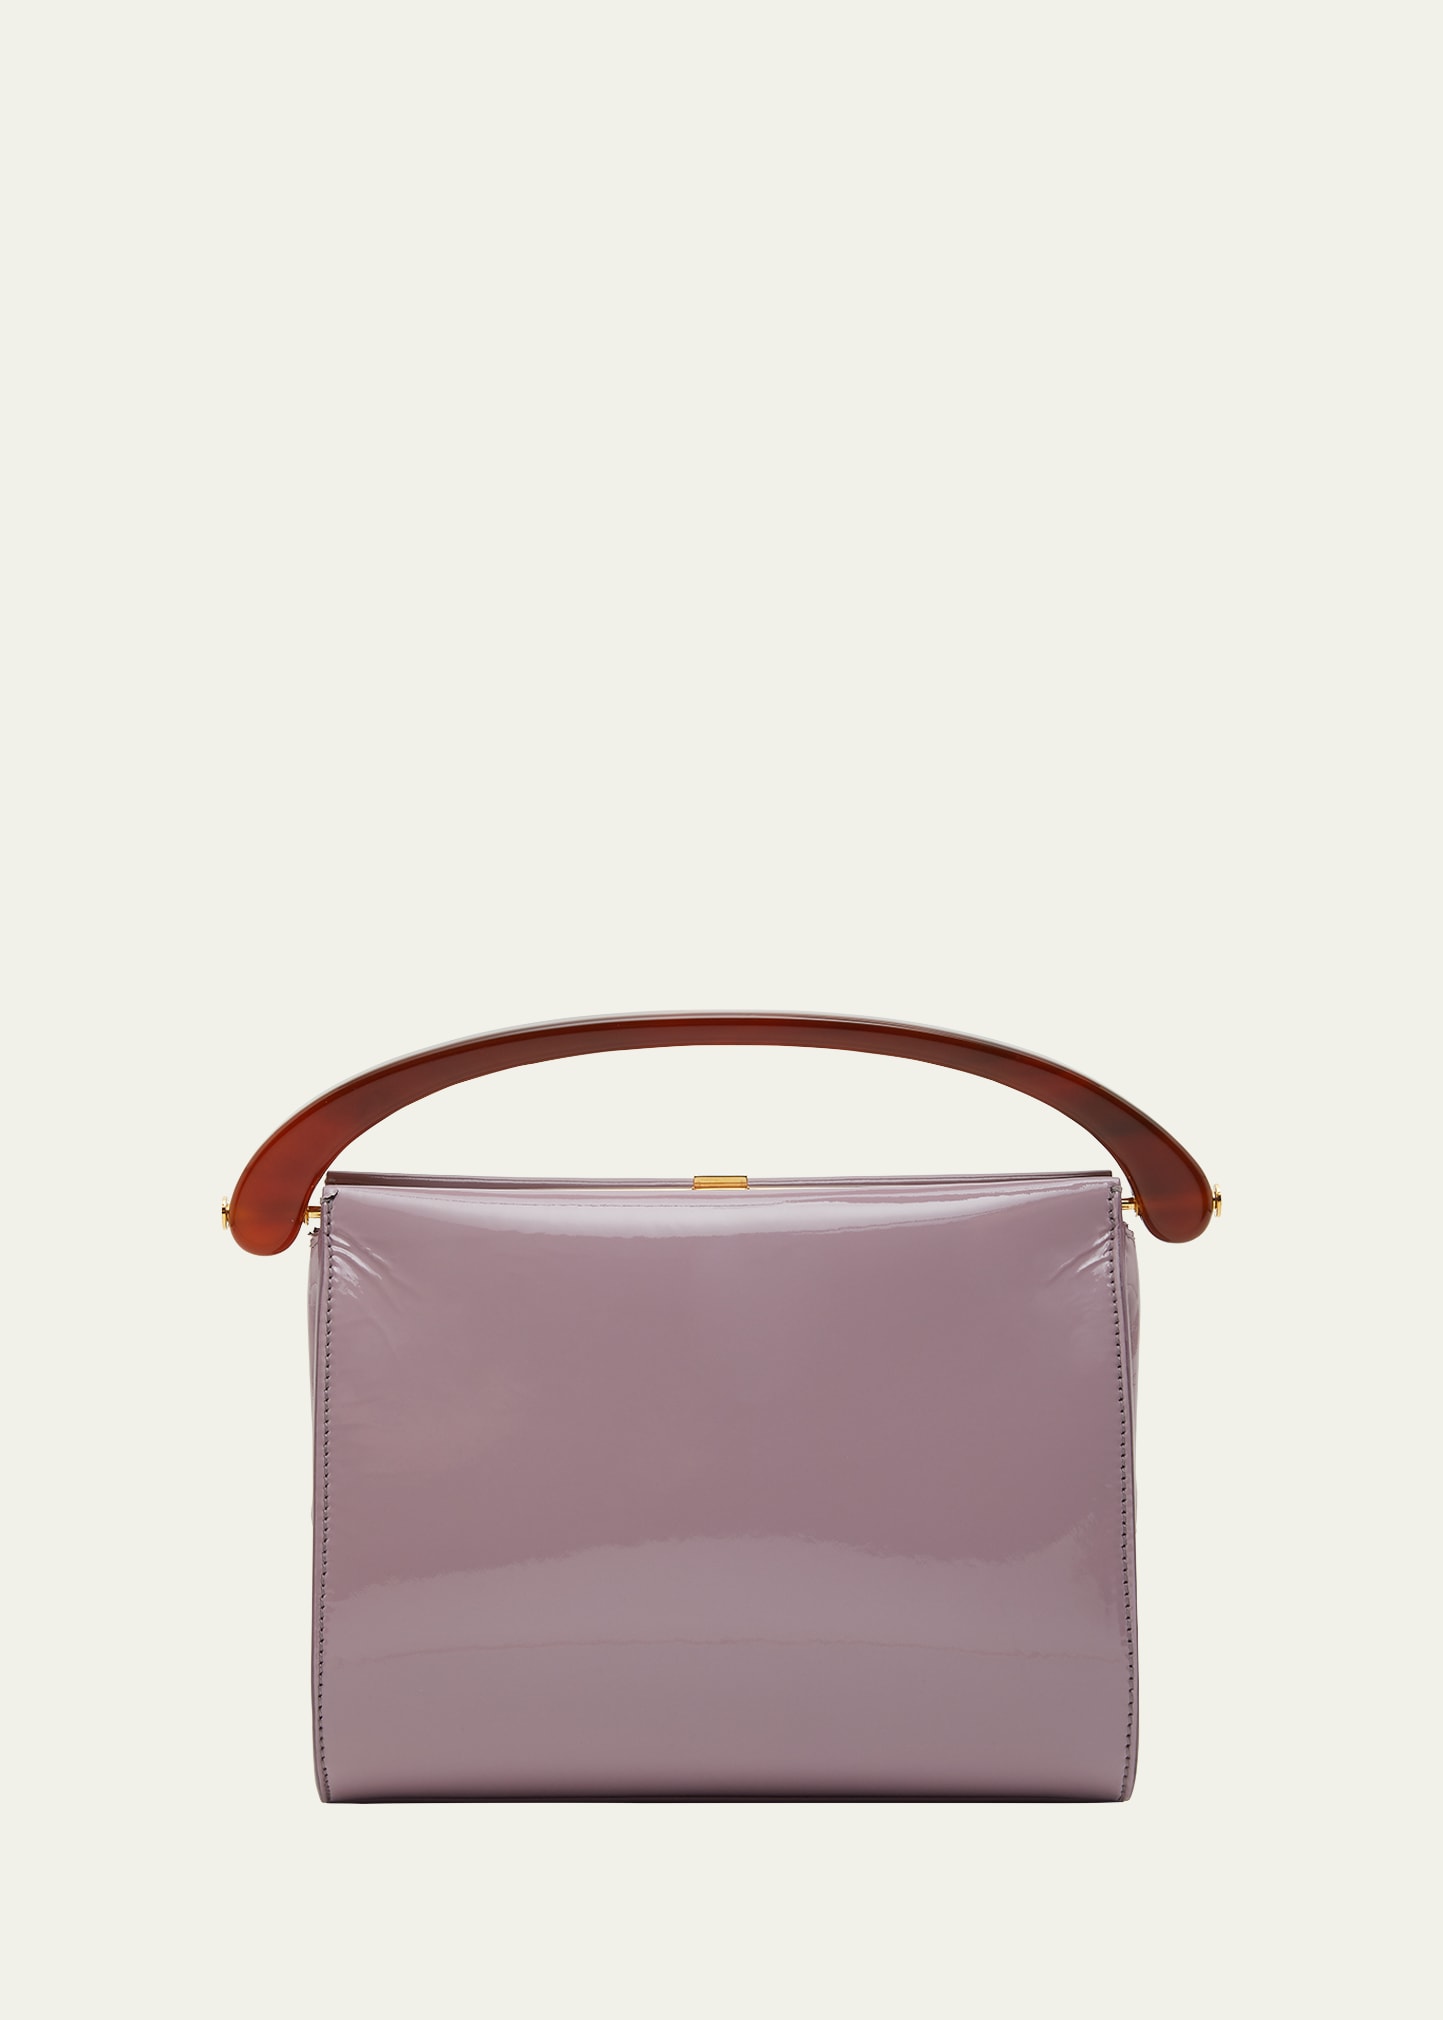 Dries Van Noten Crisp Patent Leather Top-handle Bag In 403 Lilac